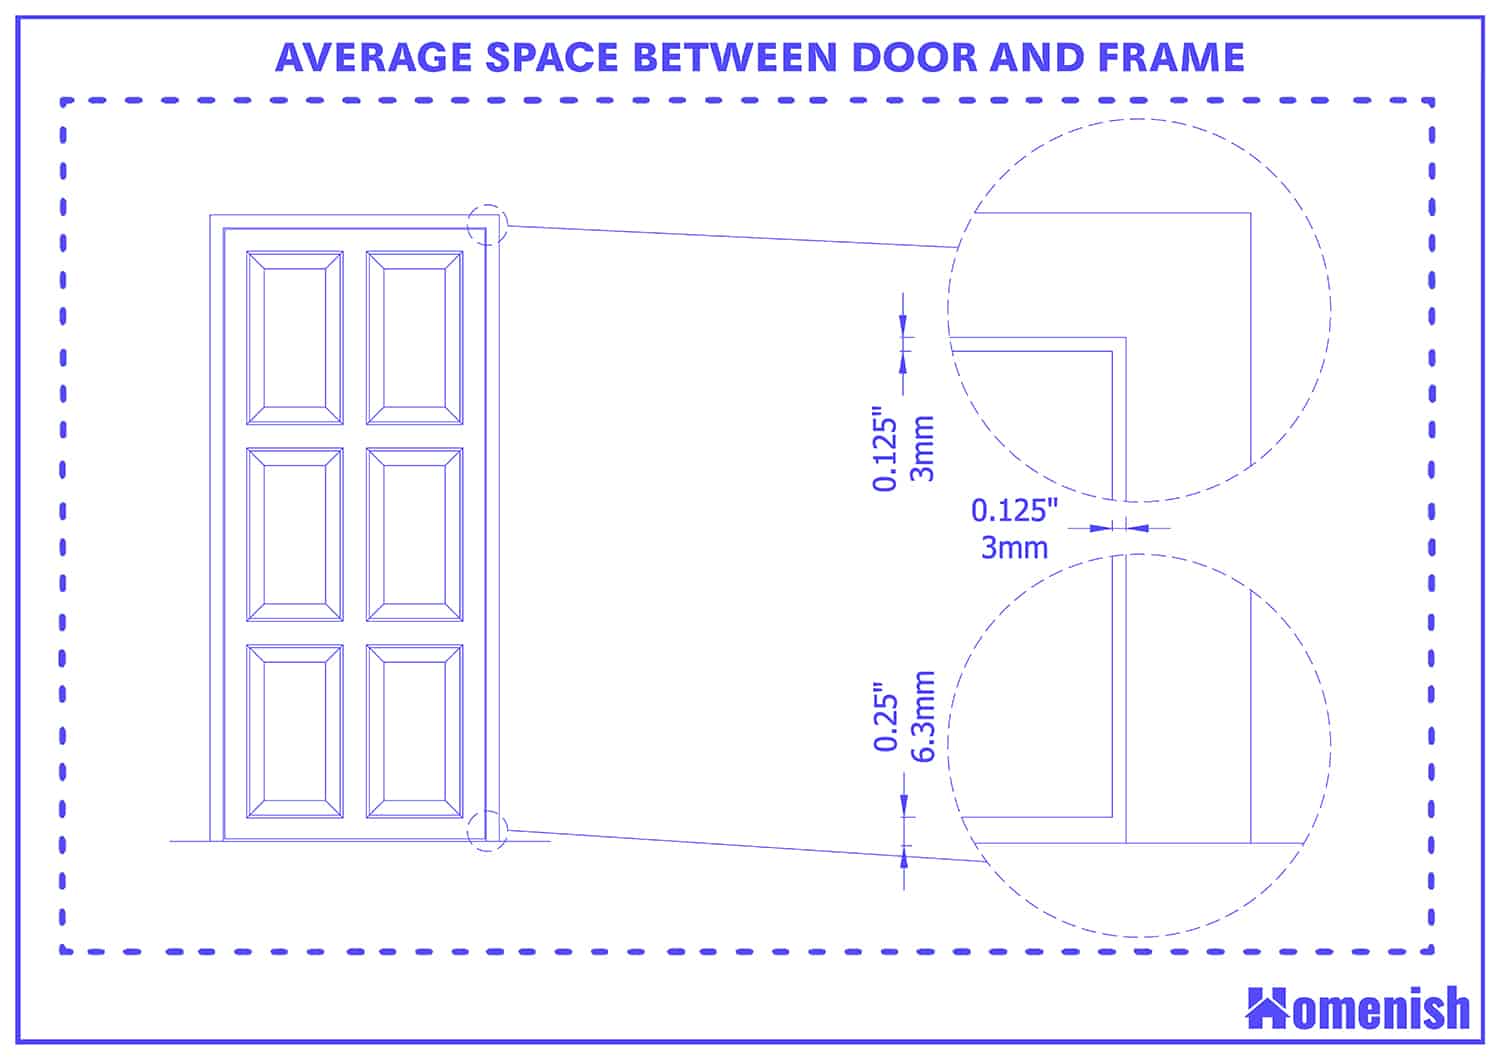 門與門框之間的平均間距